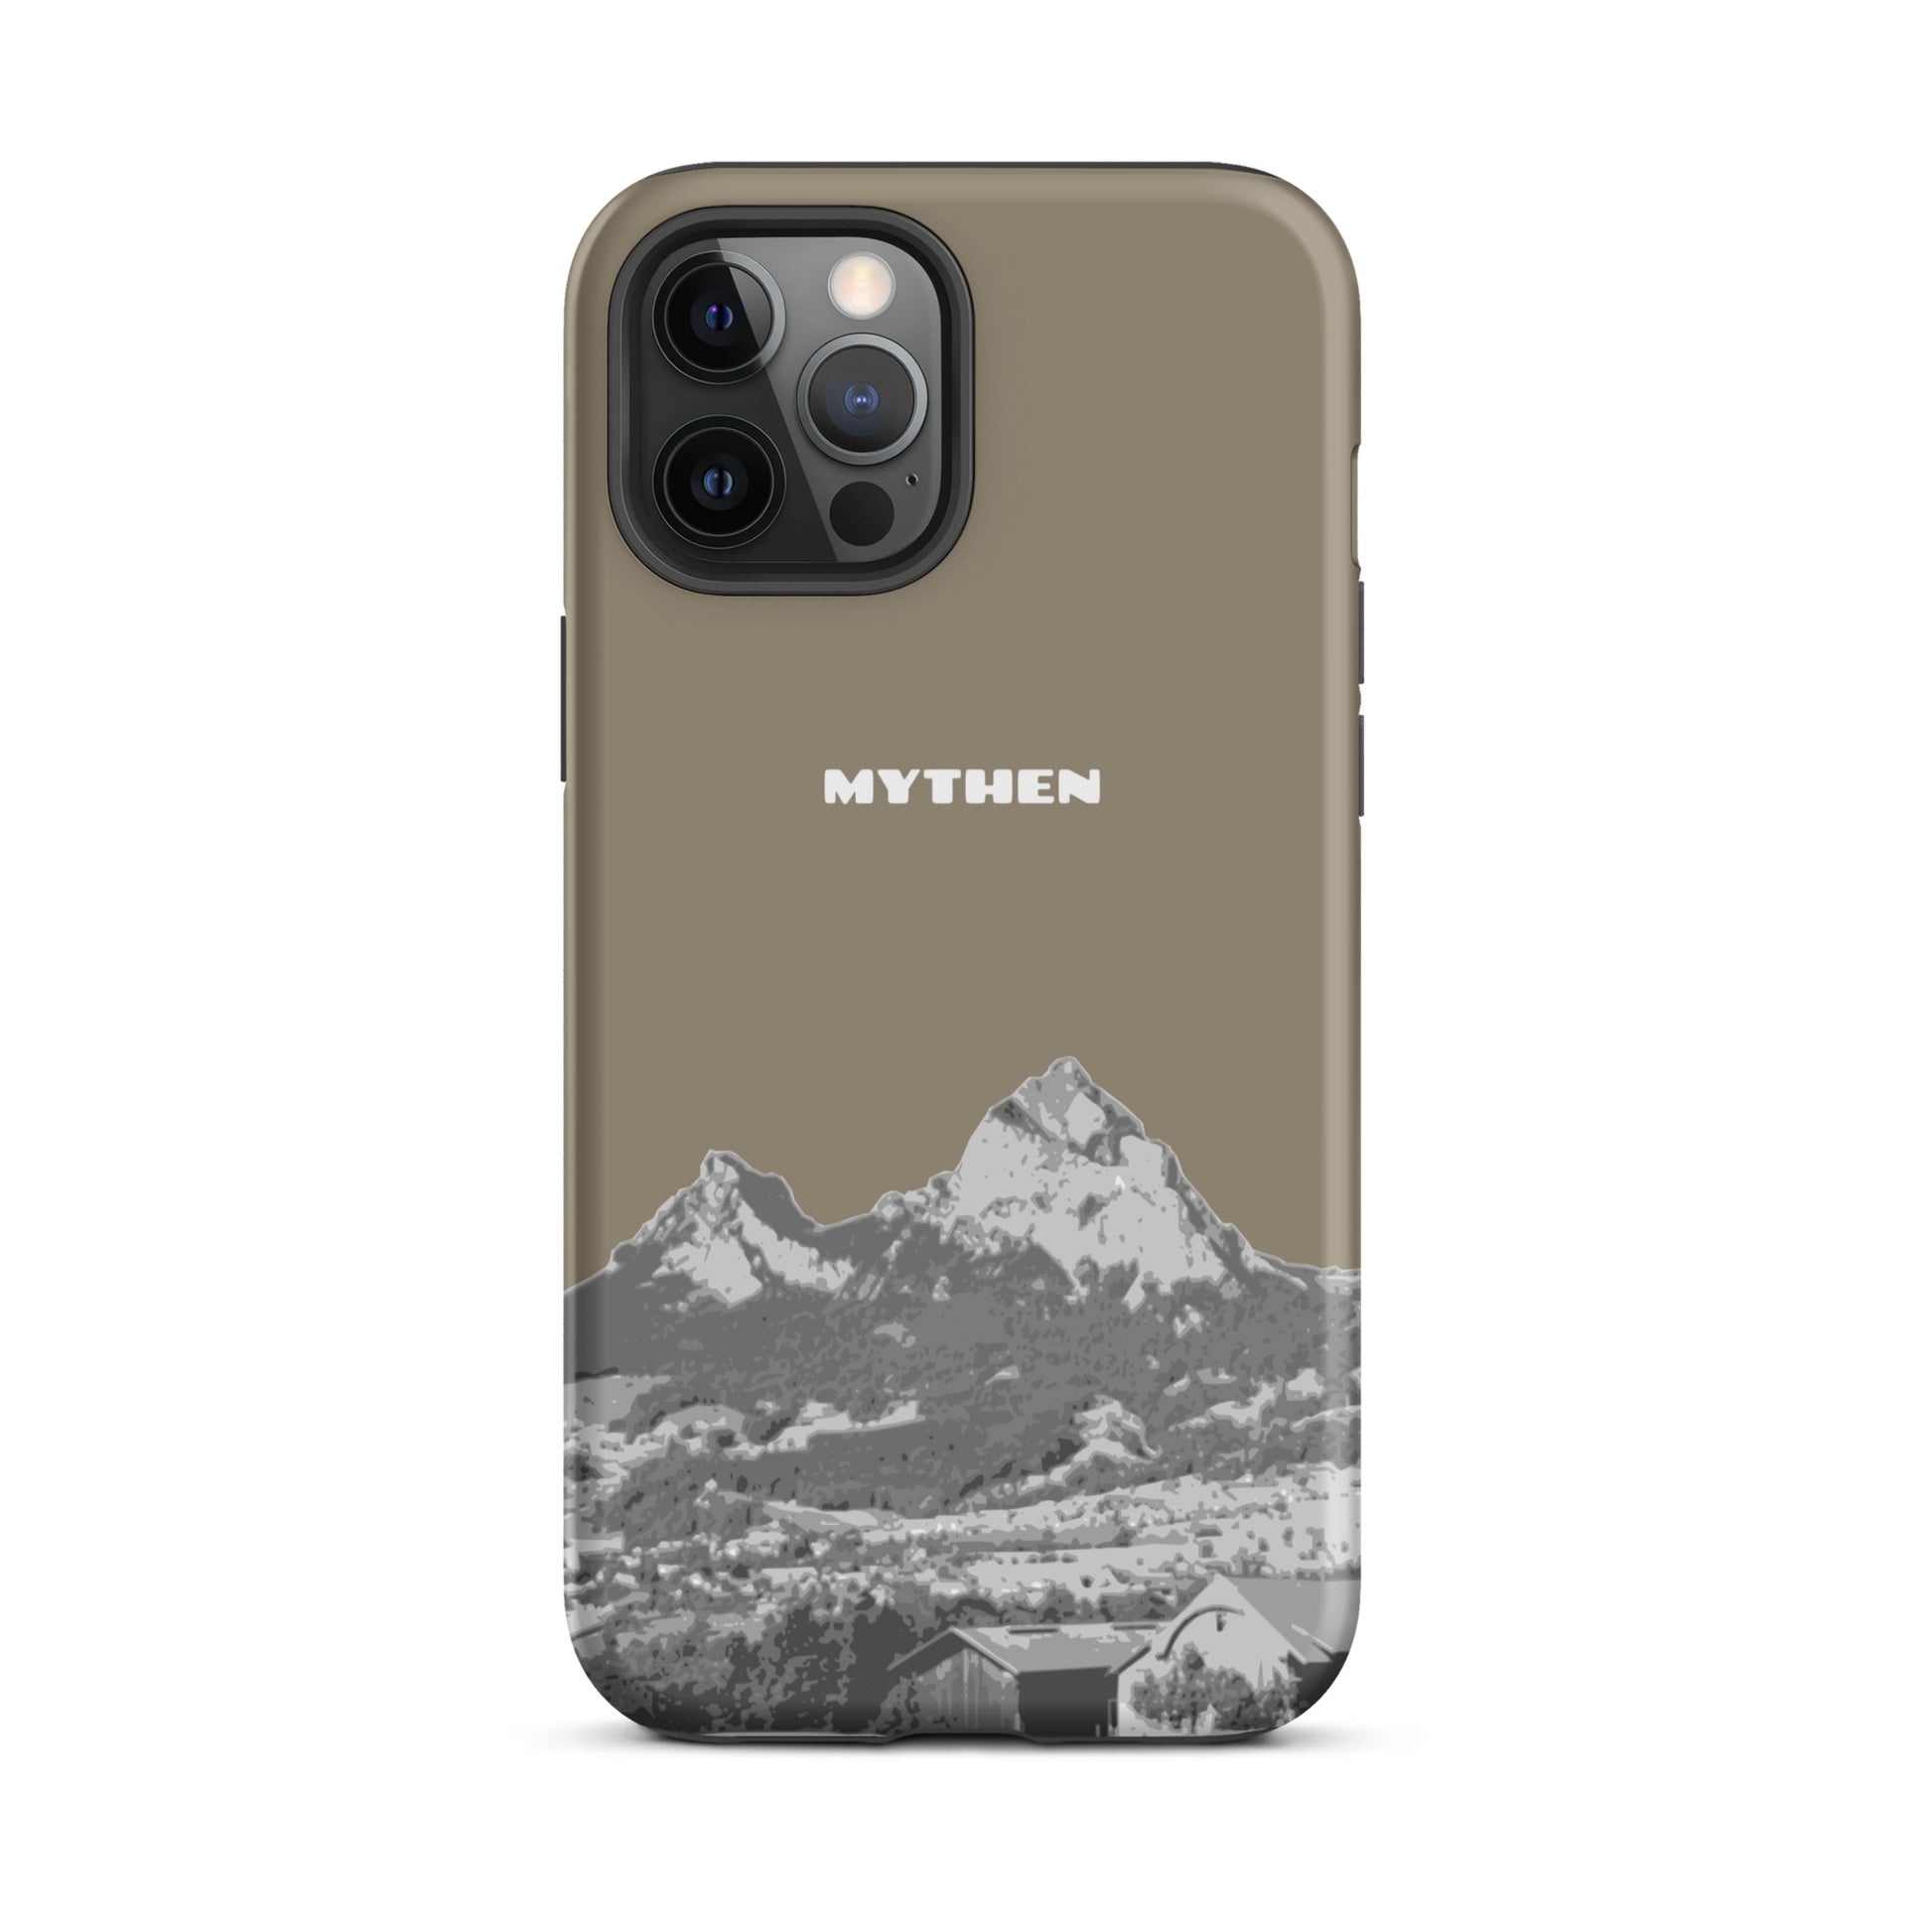 Hülle für das iPhone 12 Pro Max von Apple in der Farbe Graubraun, dass den Grossen Mythen und den Kleinen Mythen bei Schwyz zeigt. 